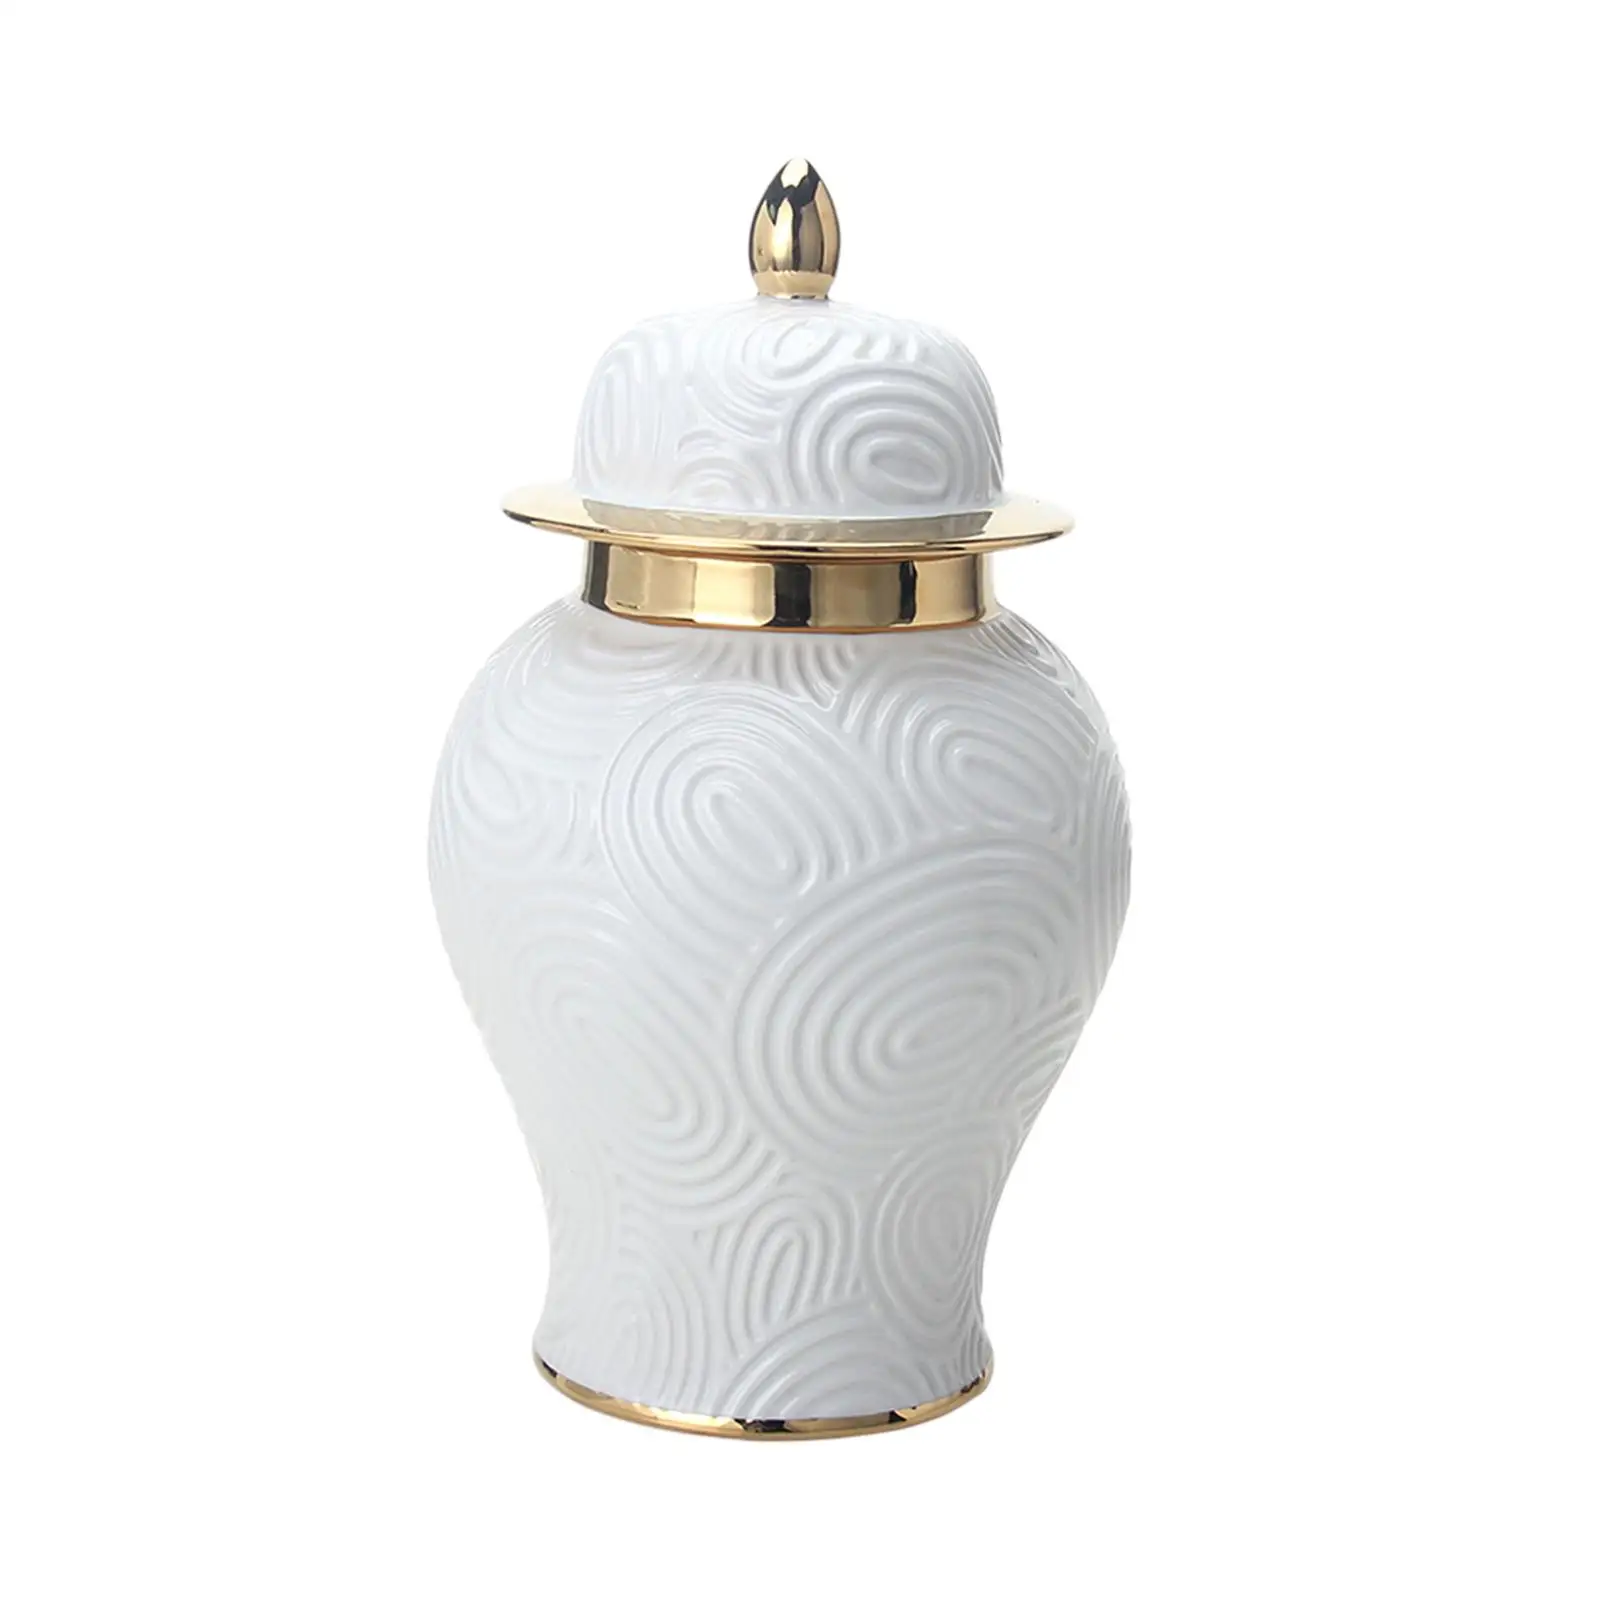 Porcelain Ginger Jar Display Gift Ornament Ceramic Vase Organizer Temple Jar for Cabinet Bedroom Fireplace Housewarming Wedding